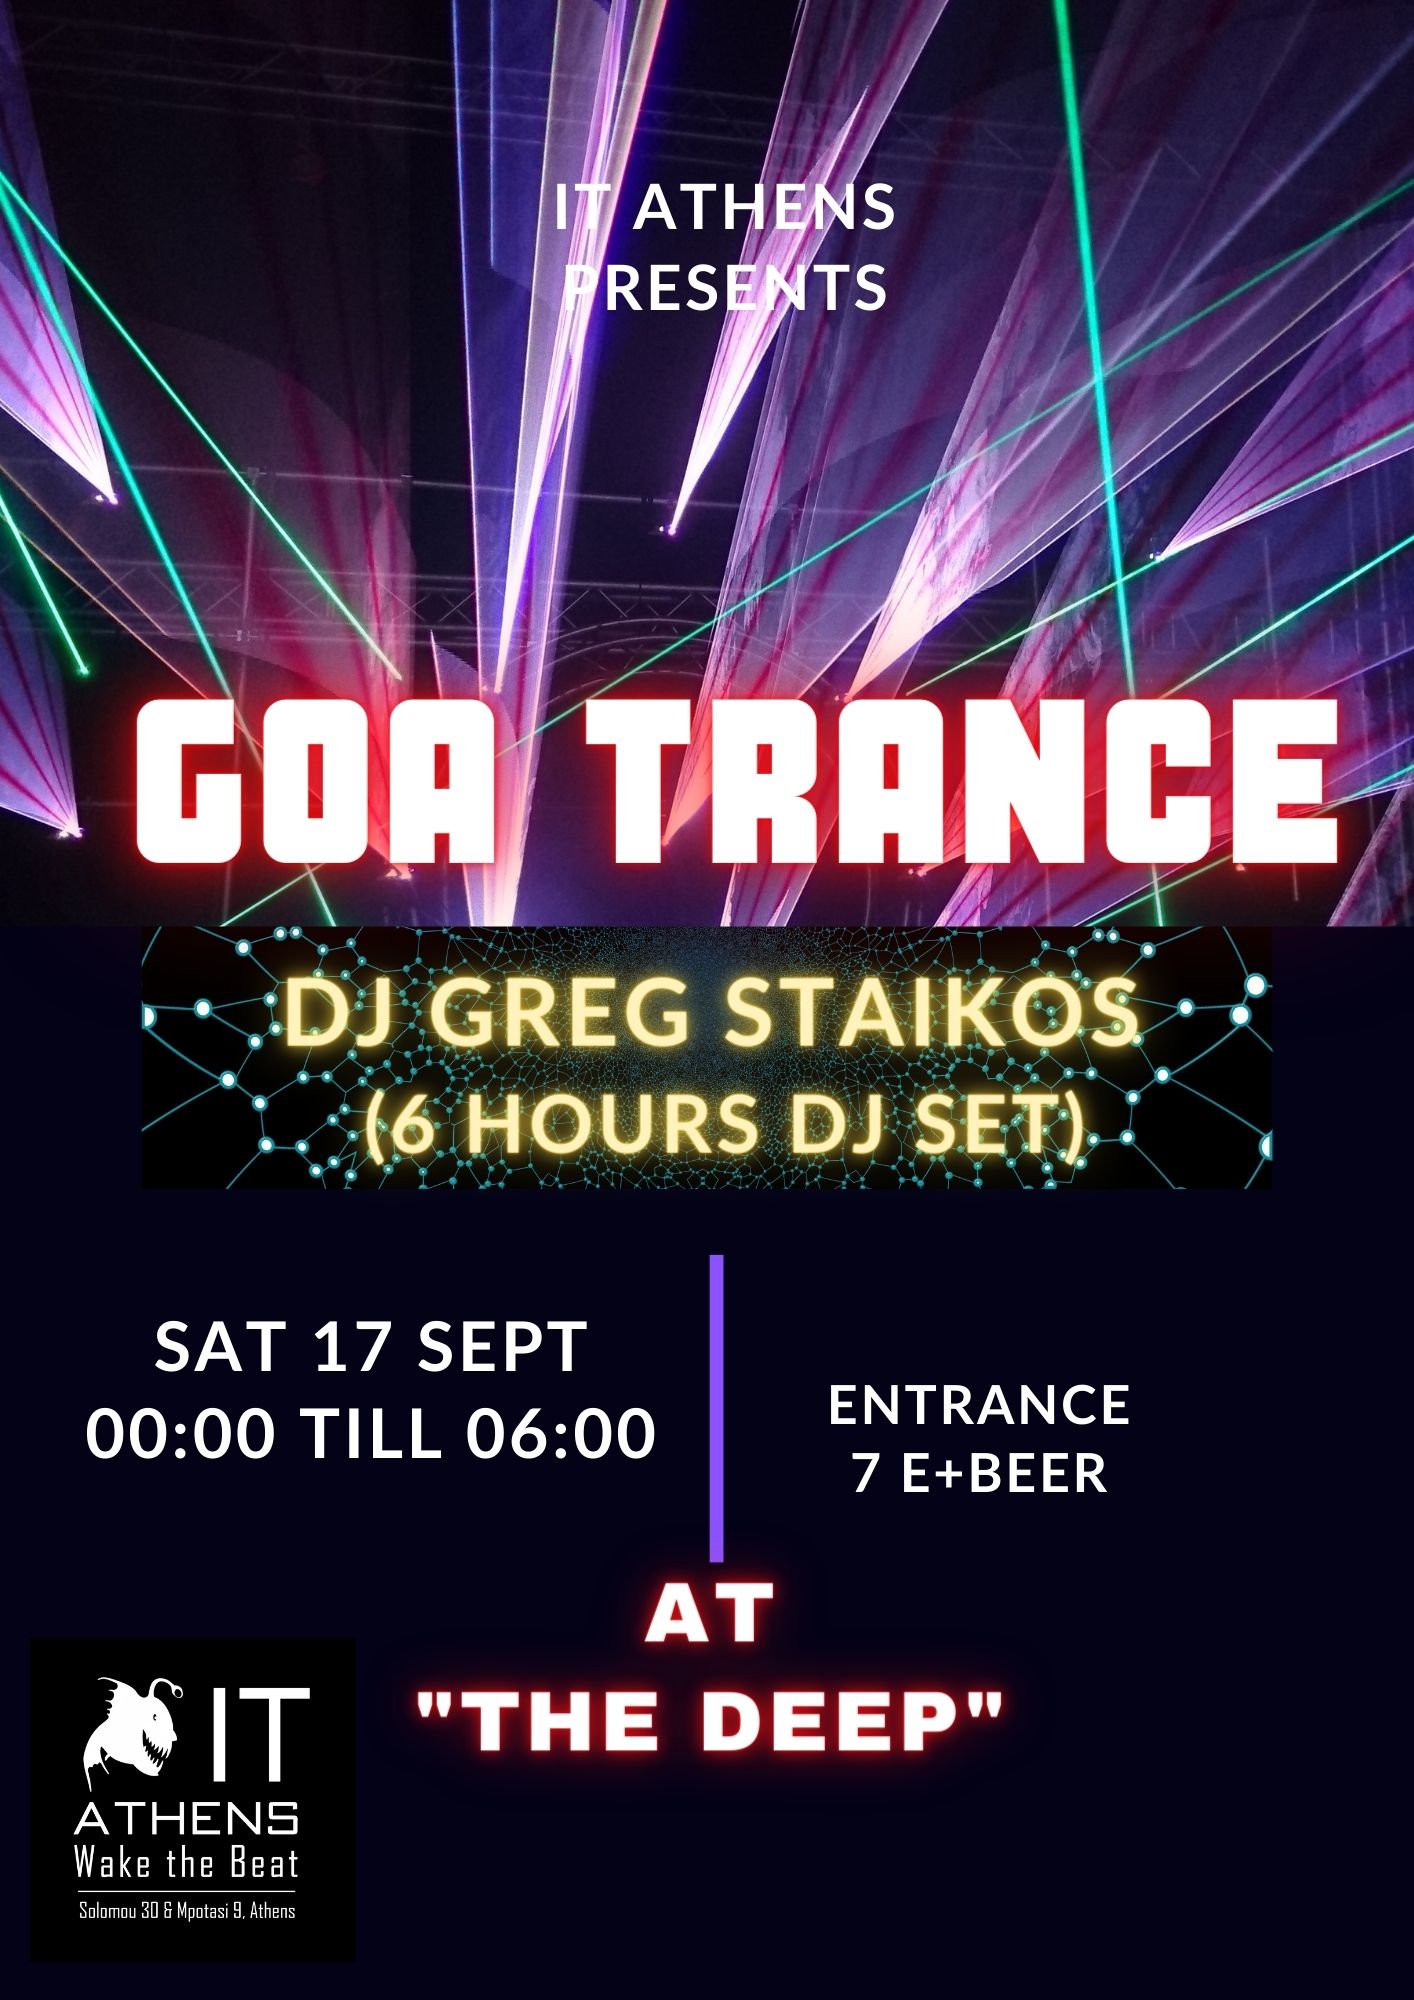 Greg Staikos at IT-Athens - 6H GOA TRANCE DJ SET at IT Athens, Athens